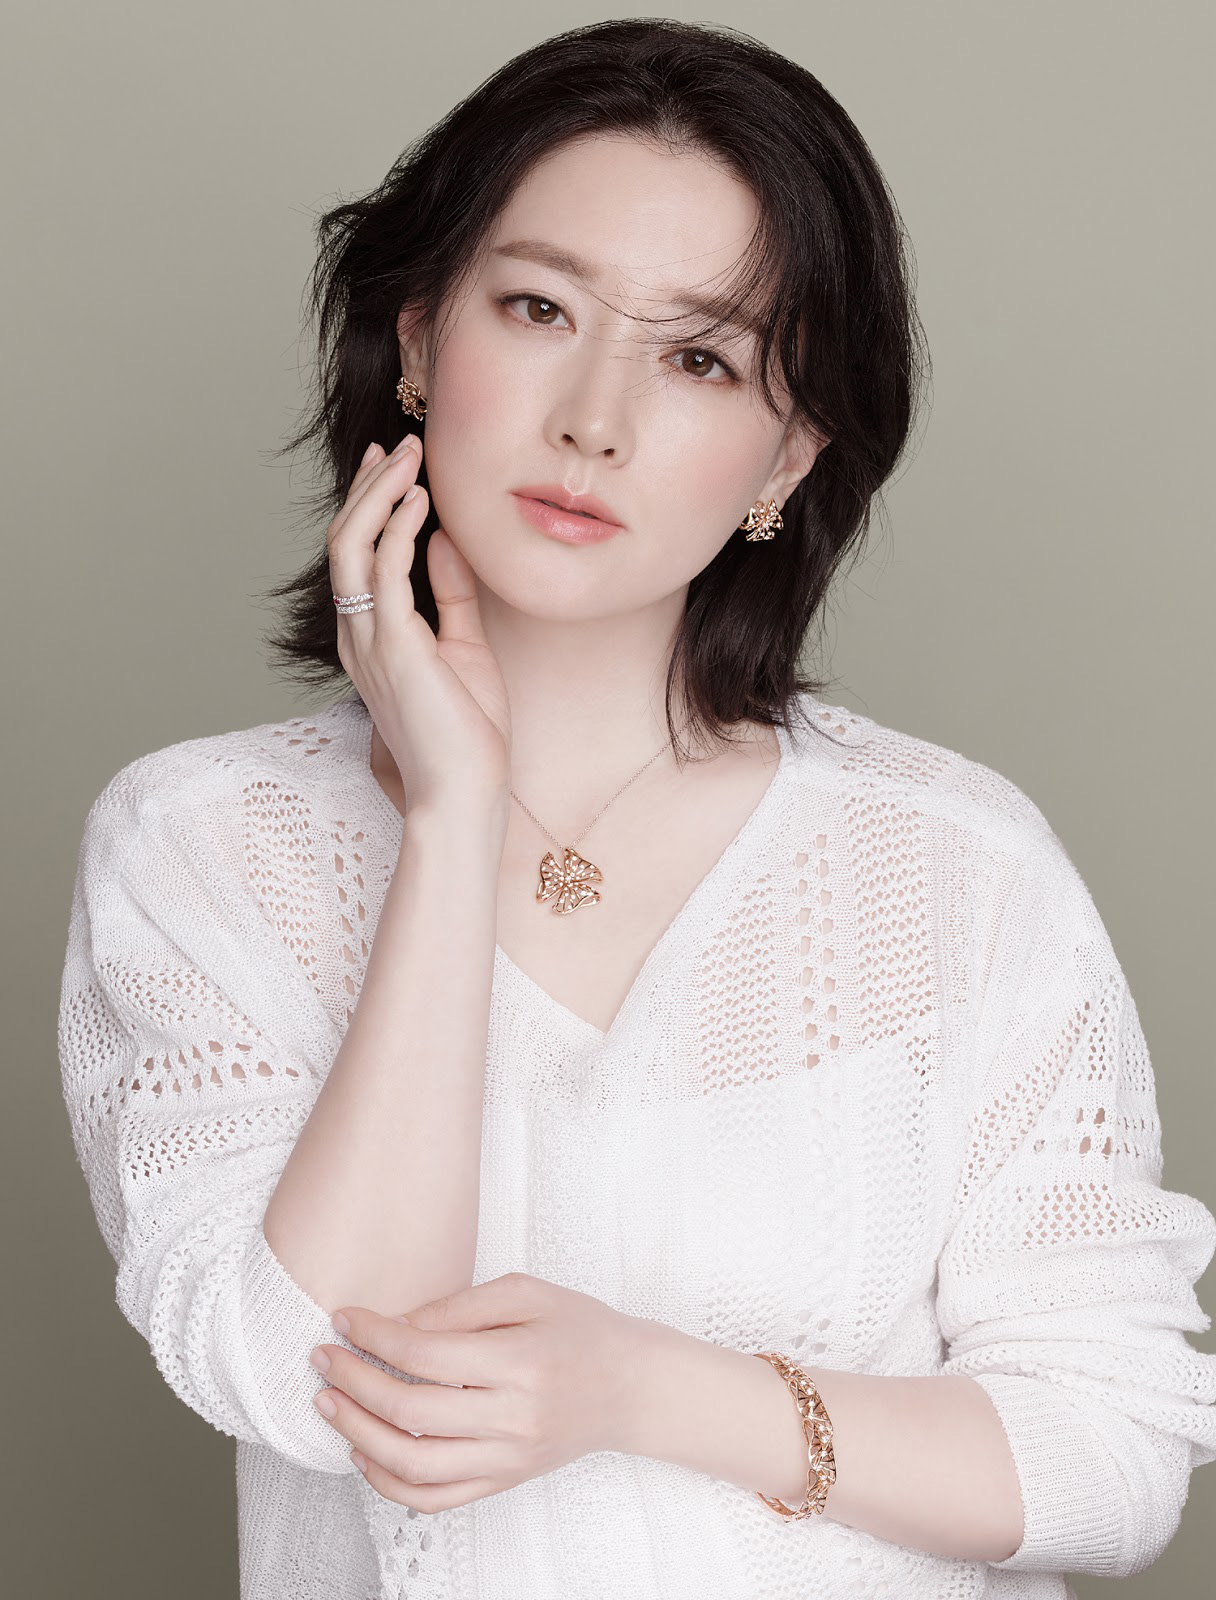 Bxh 20 Nữ Diễn Viên Hàn đẹp Nhất Mọi Thời đại Top 3 Gây Tranh Cãi Vị Trí Song Hye Kyo Son Ye